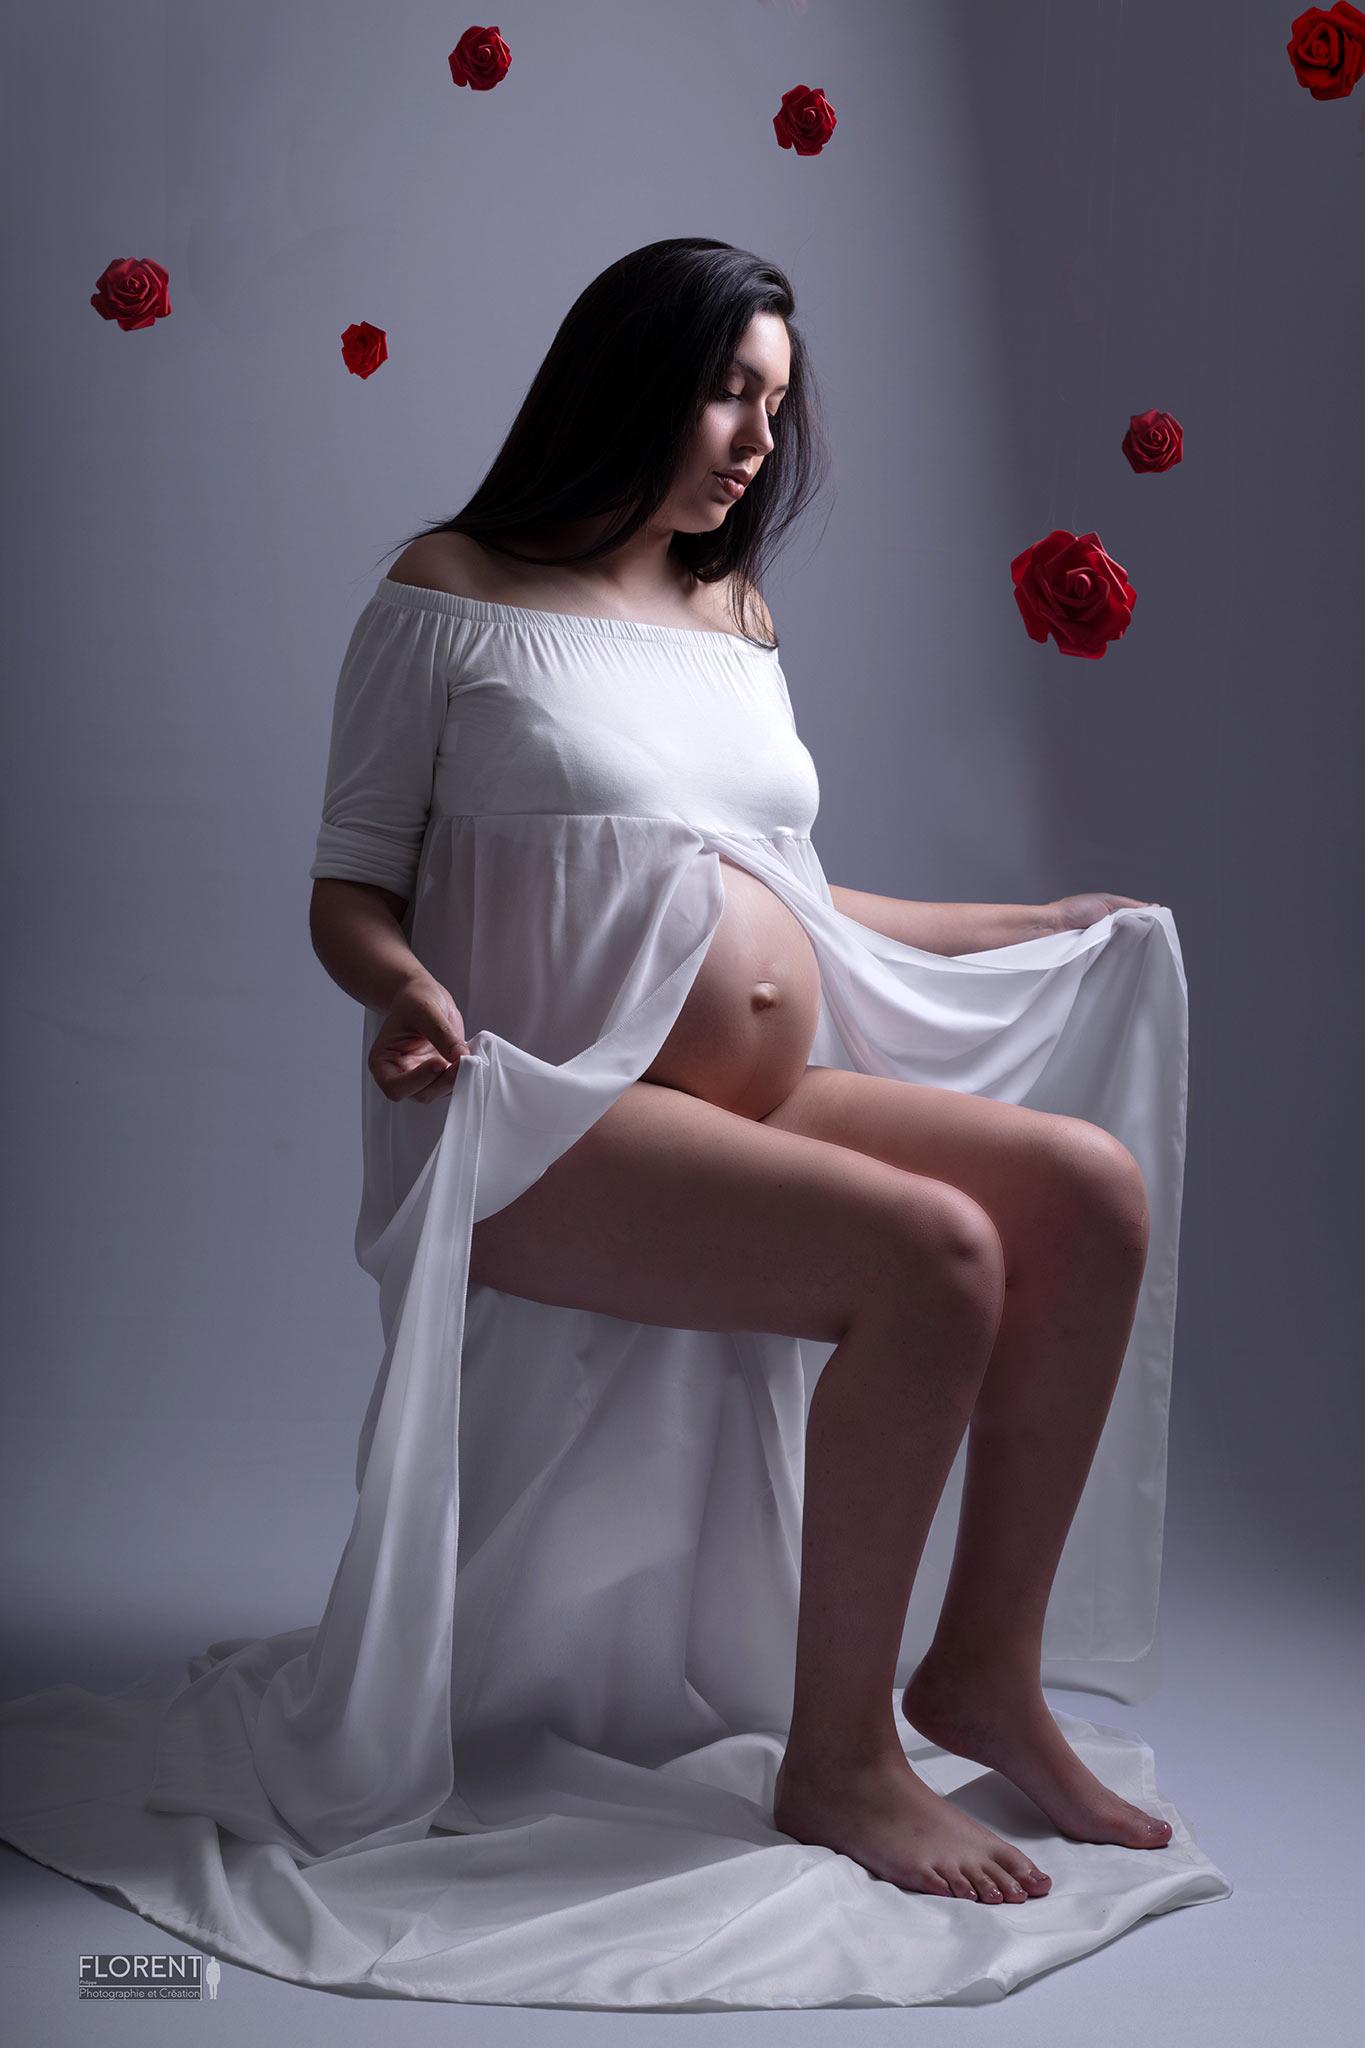 photographe séance personnalisée maternité rose grossesse avec roses suspendues florent photographe boulogne sur mer calais lille paris